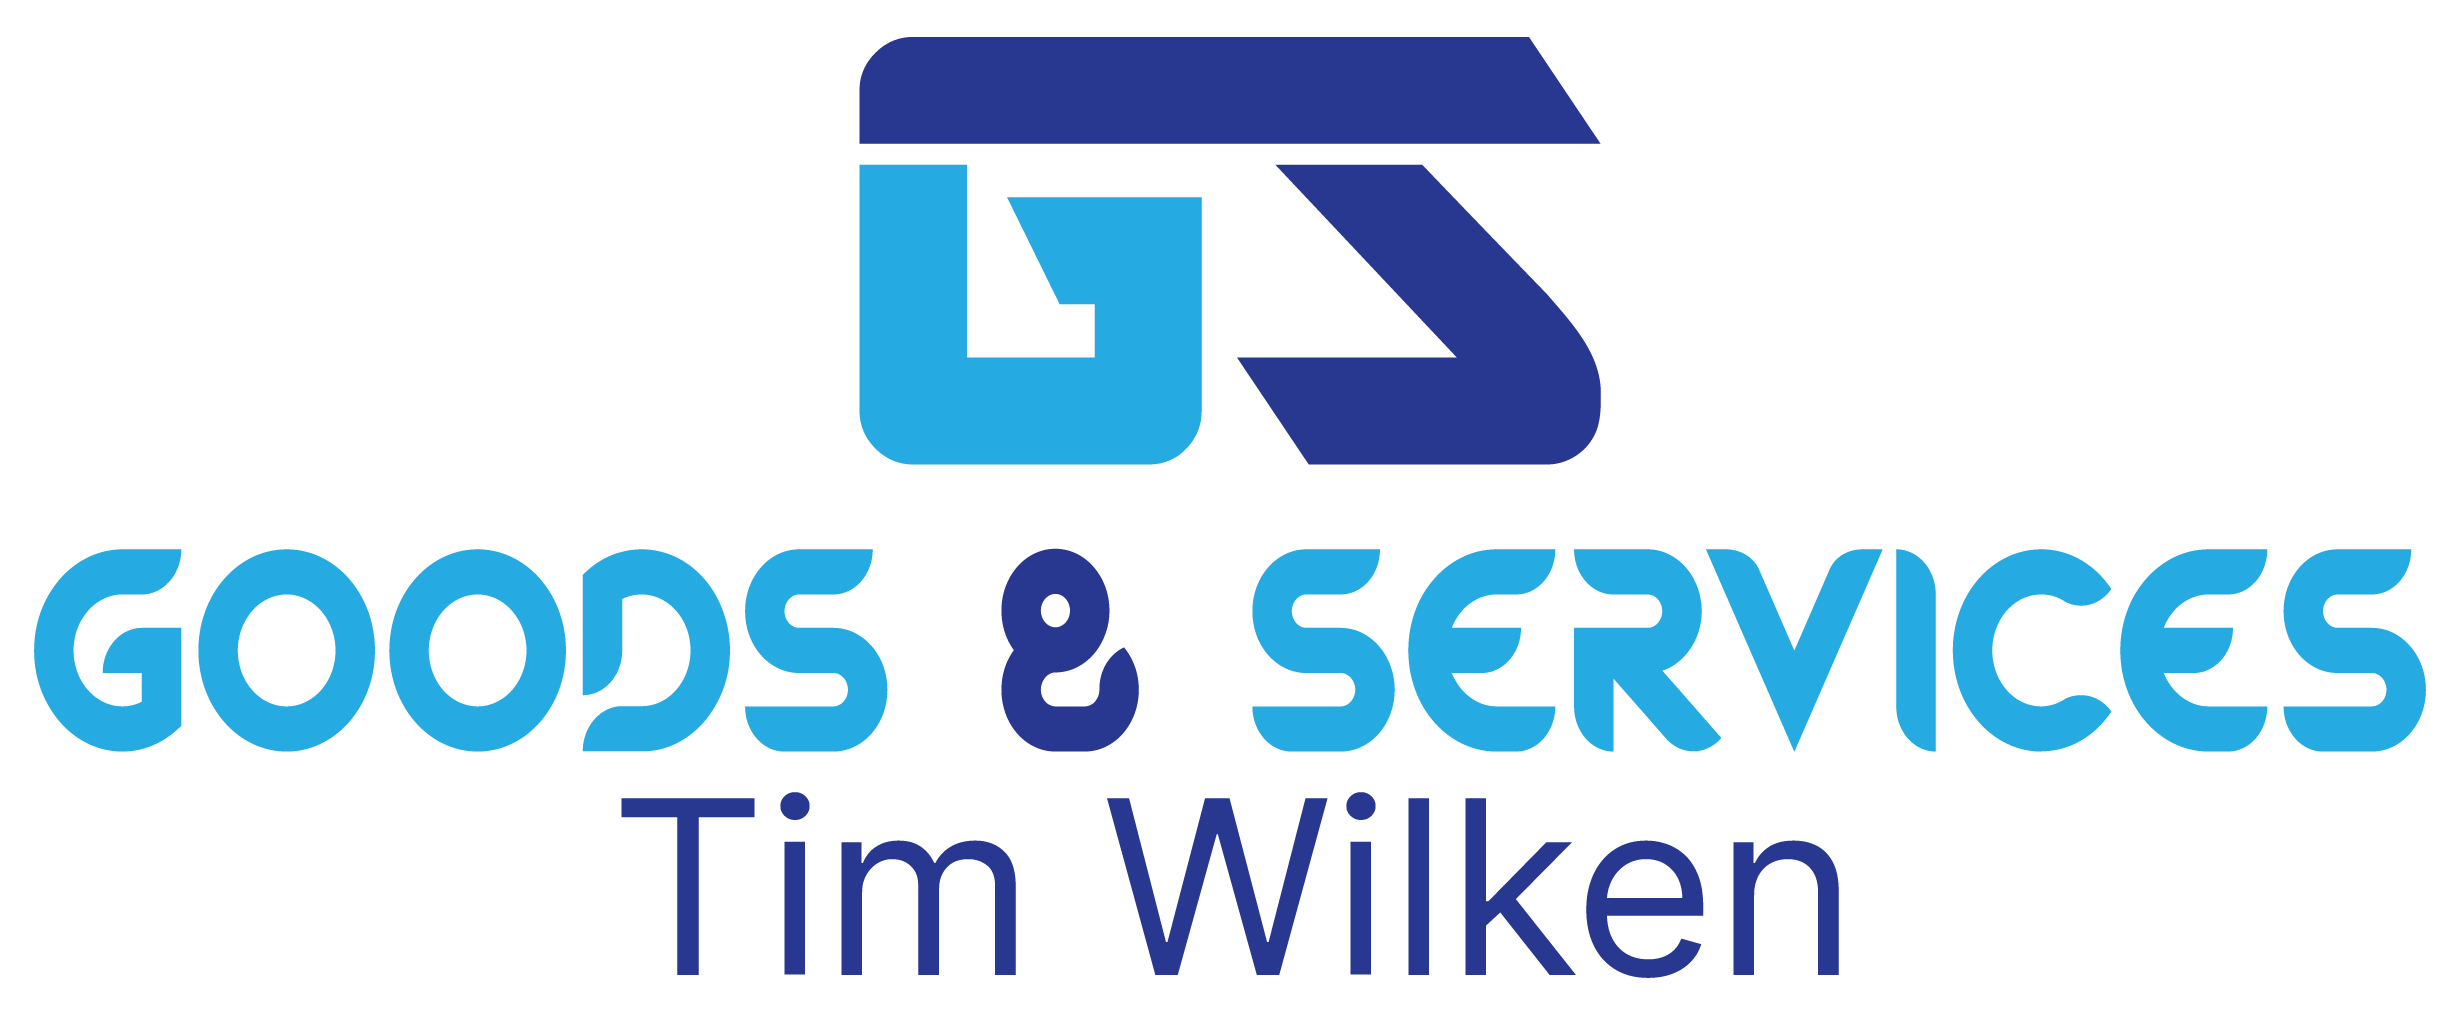 Goods & Services - Tim Wilken